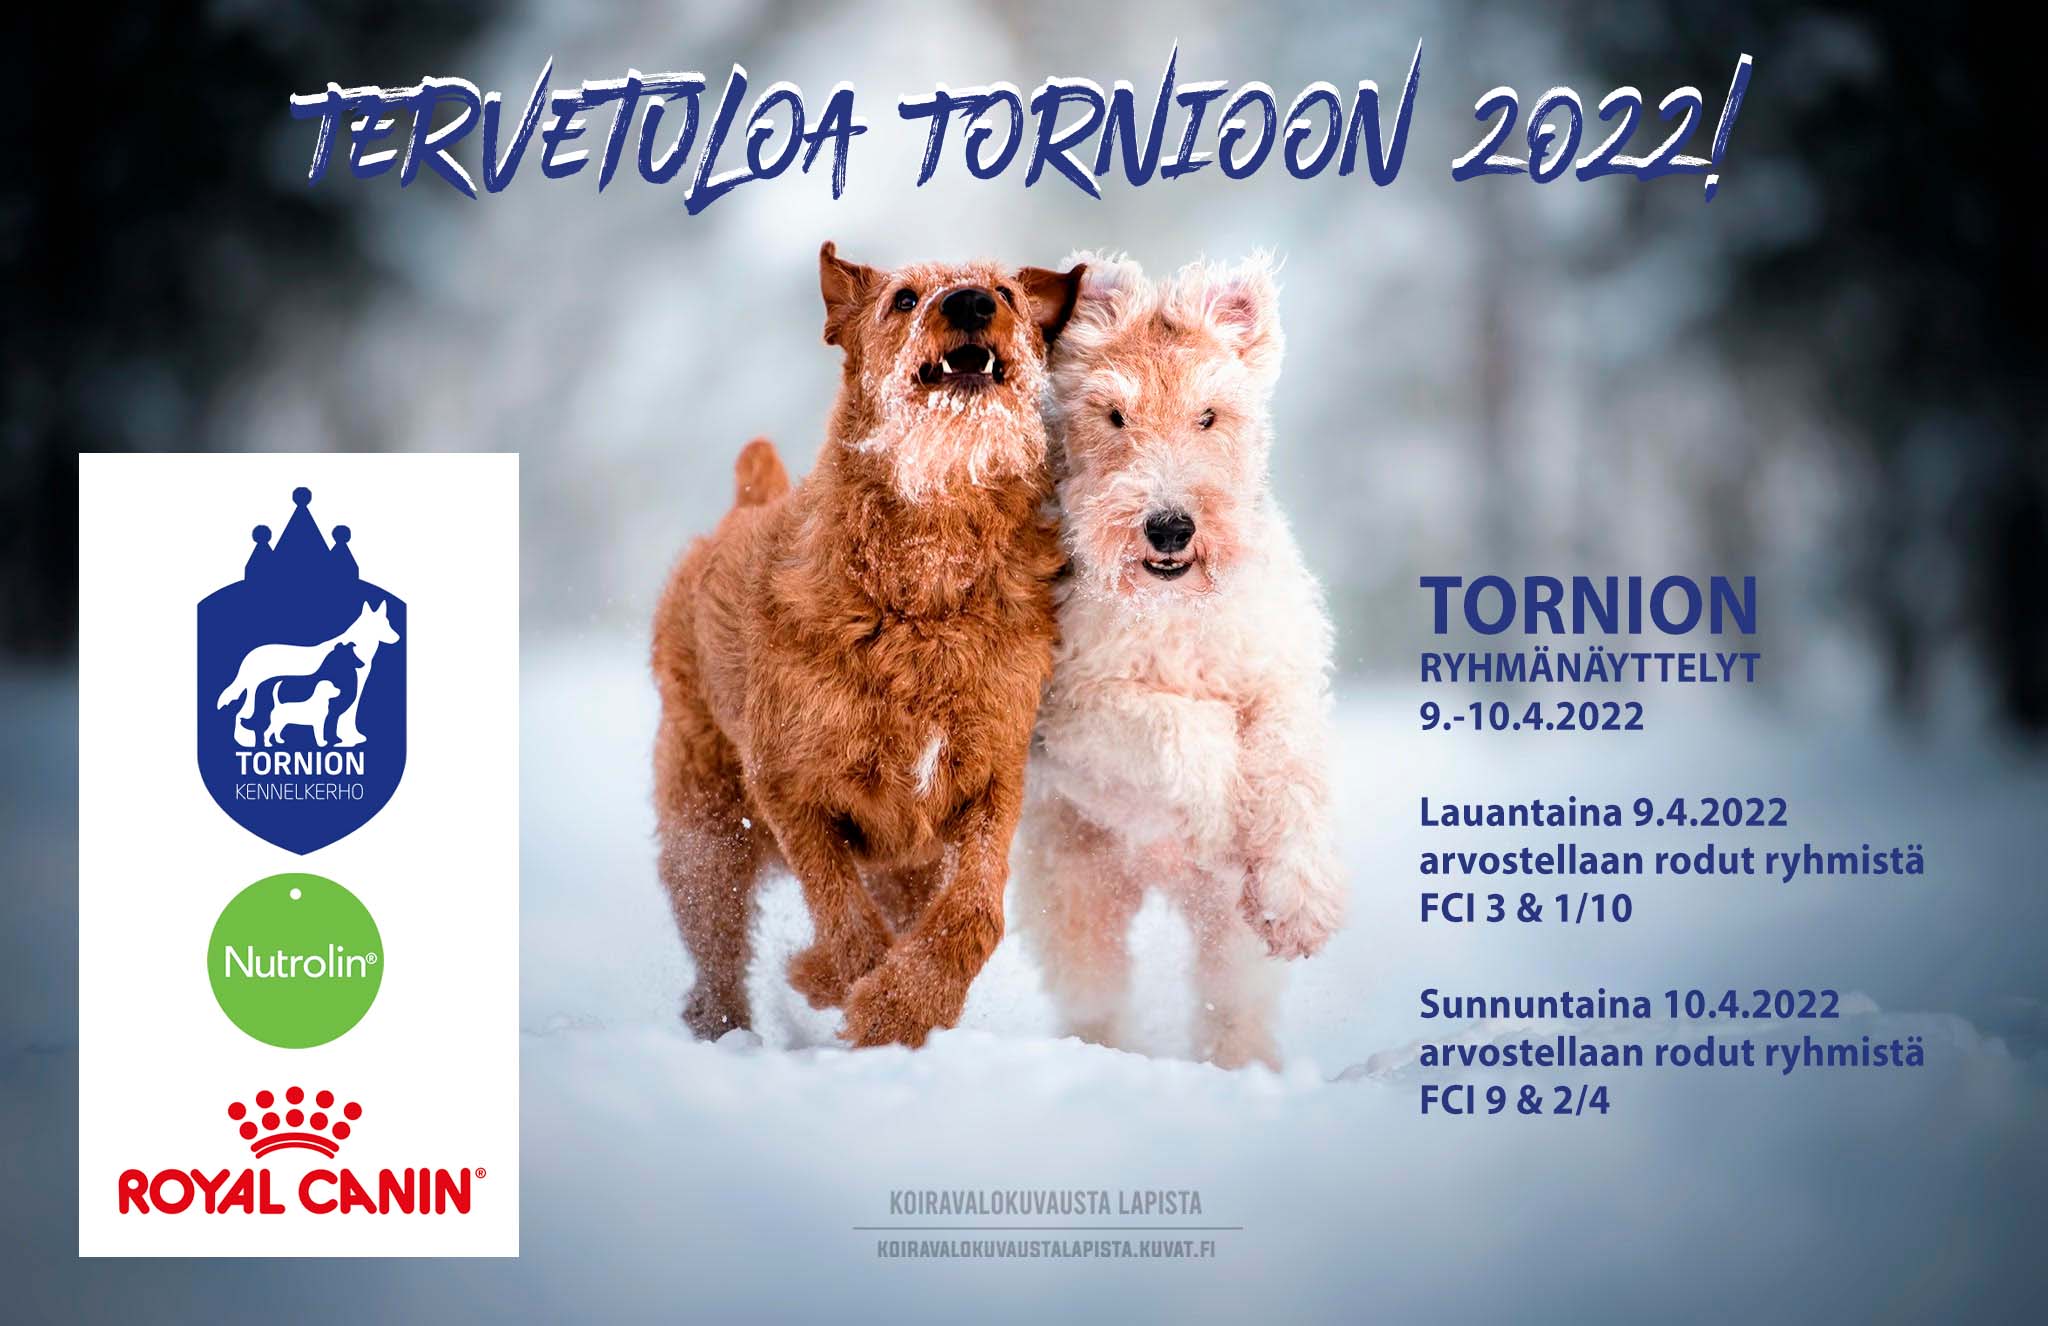 Tornion ryhmänäyttelyt 26. & 27.2.2022